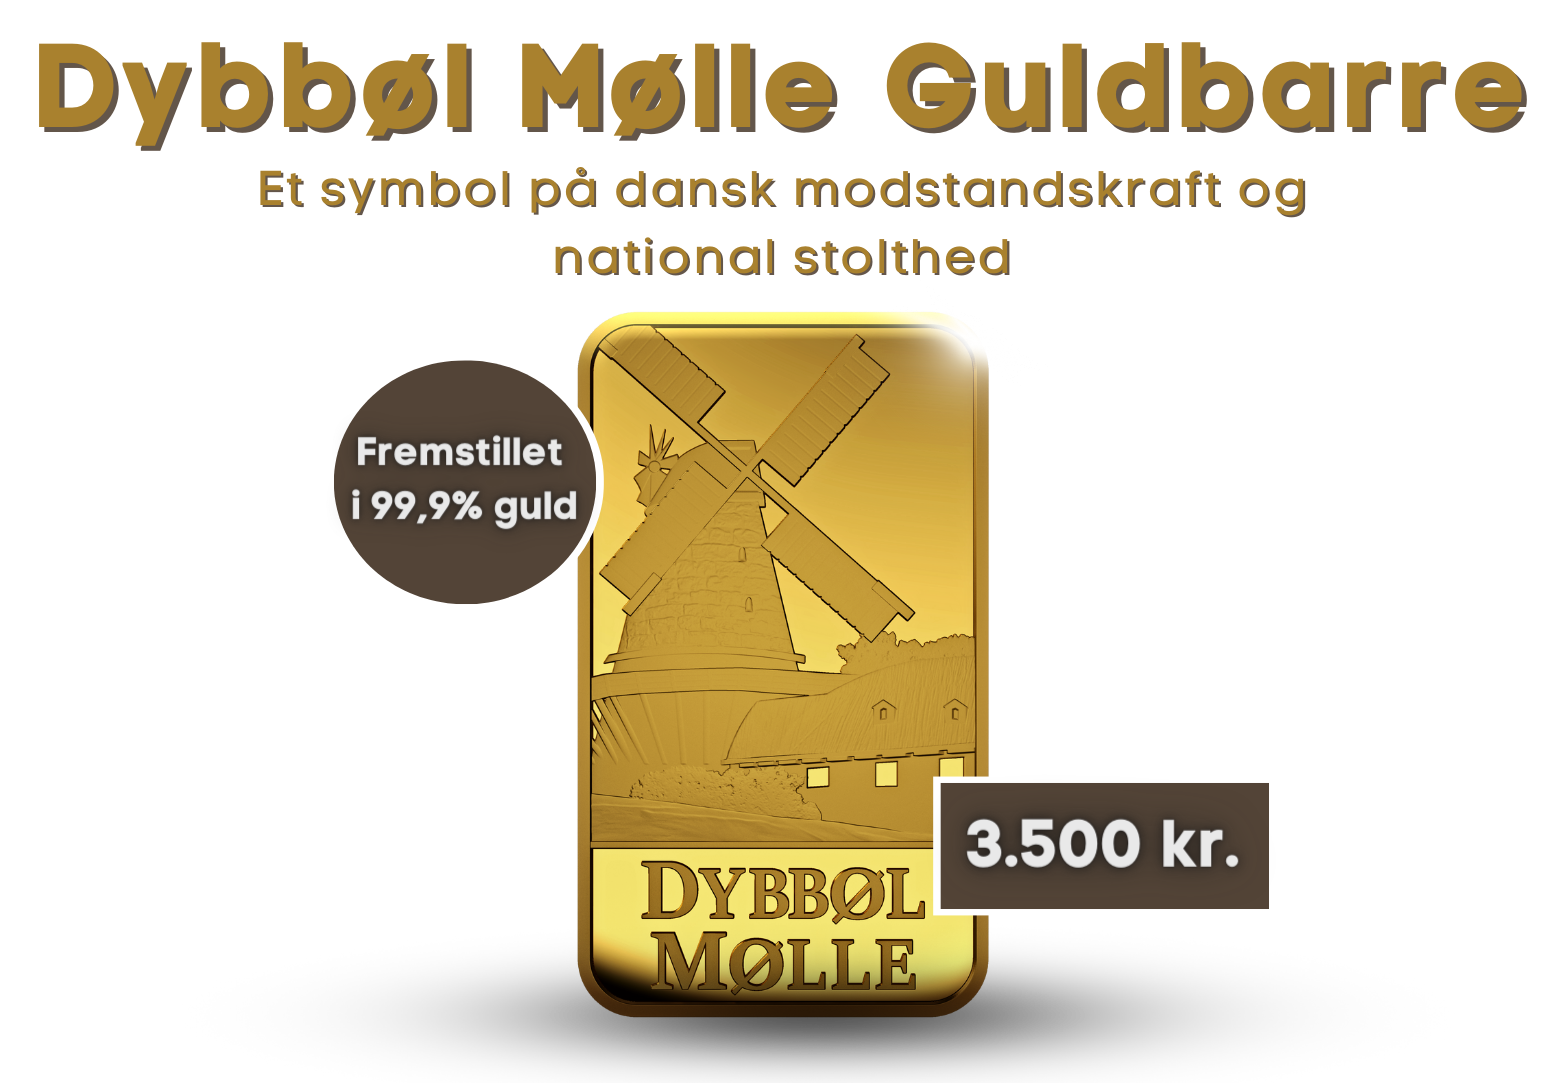 Eksklusiv Dybbøl Mølle 2,5 gram guldbarre fremstillet i 99,9% guld